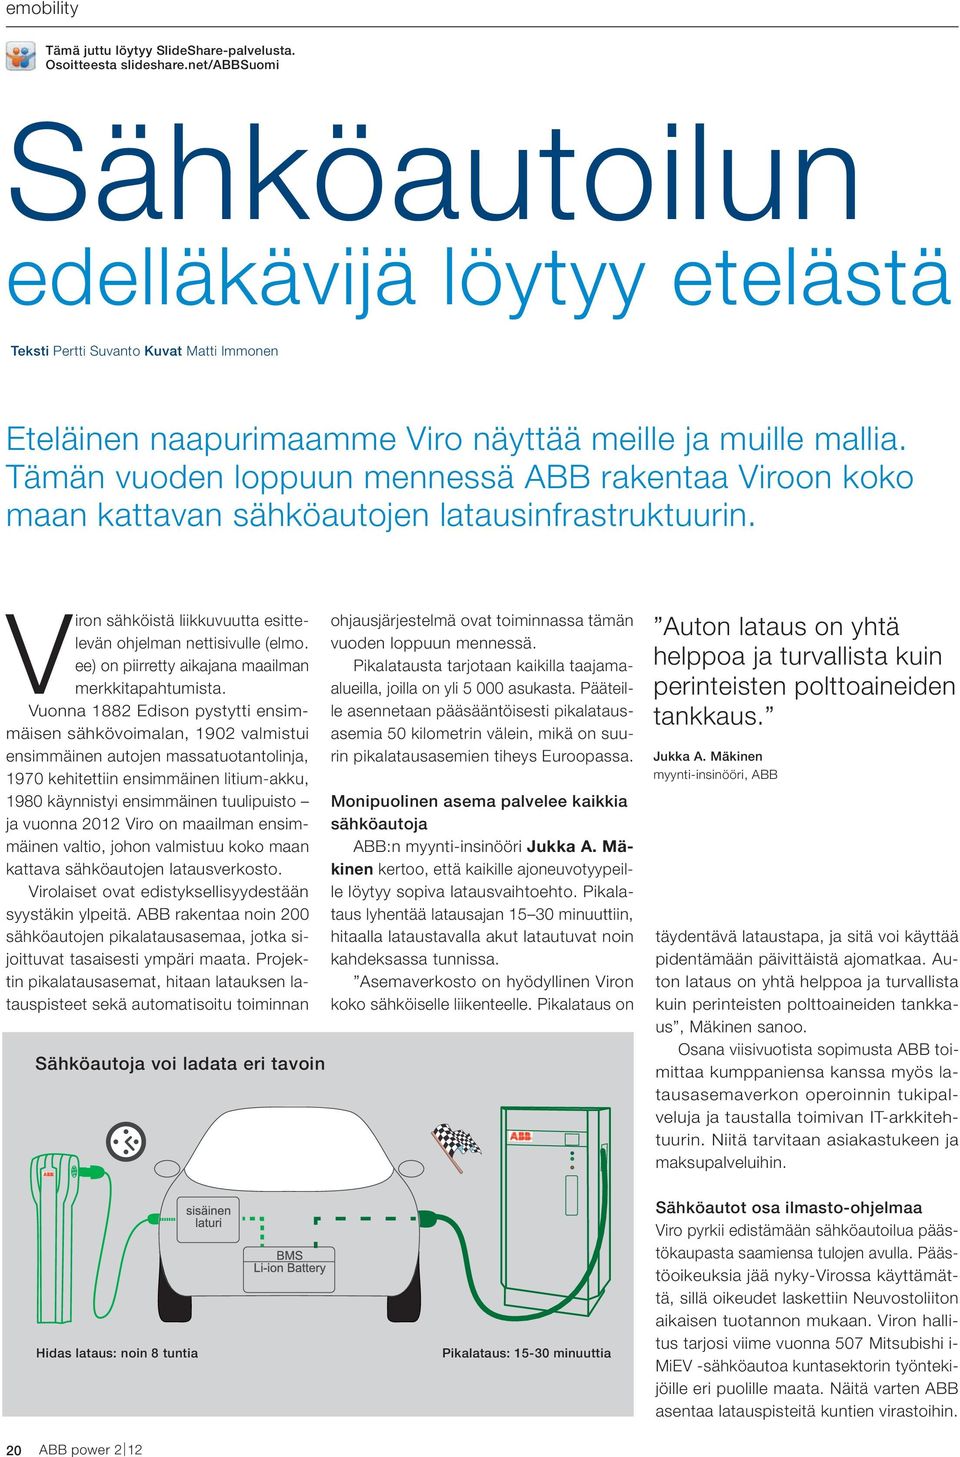 Tämän vuoden loppuun mennessä ABB rakentaa Viroon koko maan kattavan sähköautojen latausinfrastruktuurin. Viron sähköistä liikkuvuutta esittelevän ohjelman nettisivulle 01 (elmo.